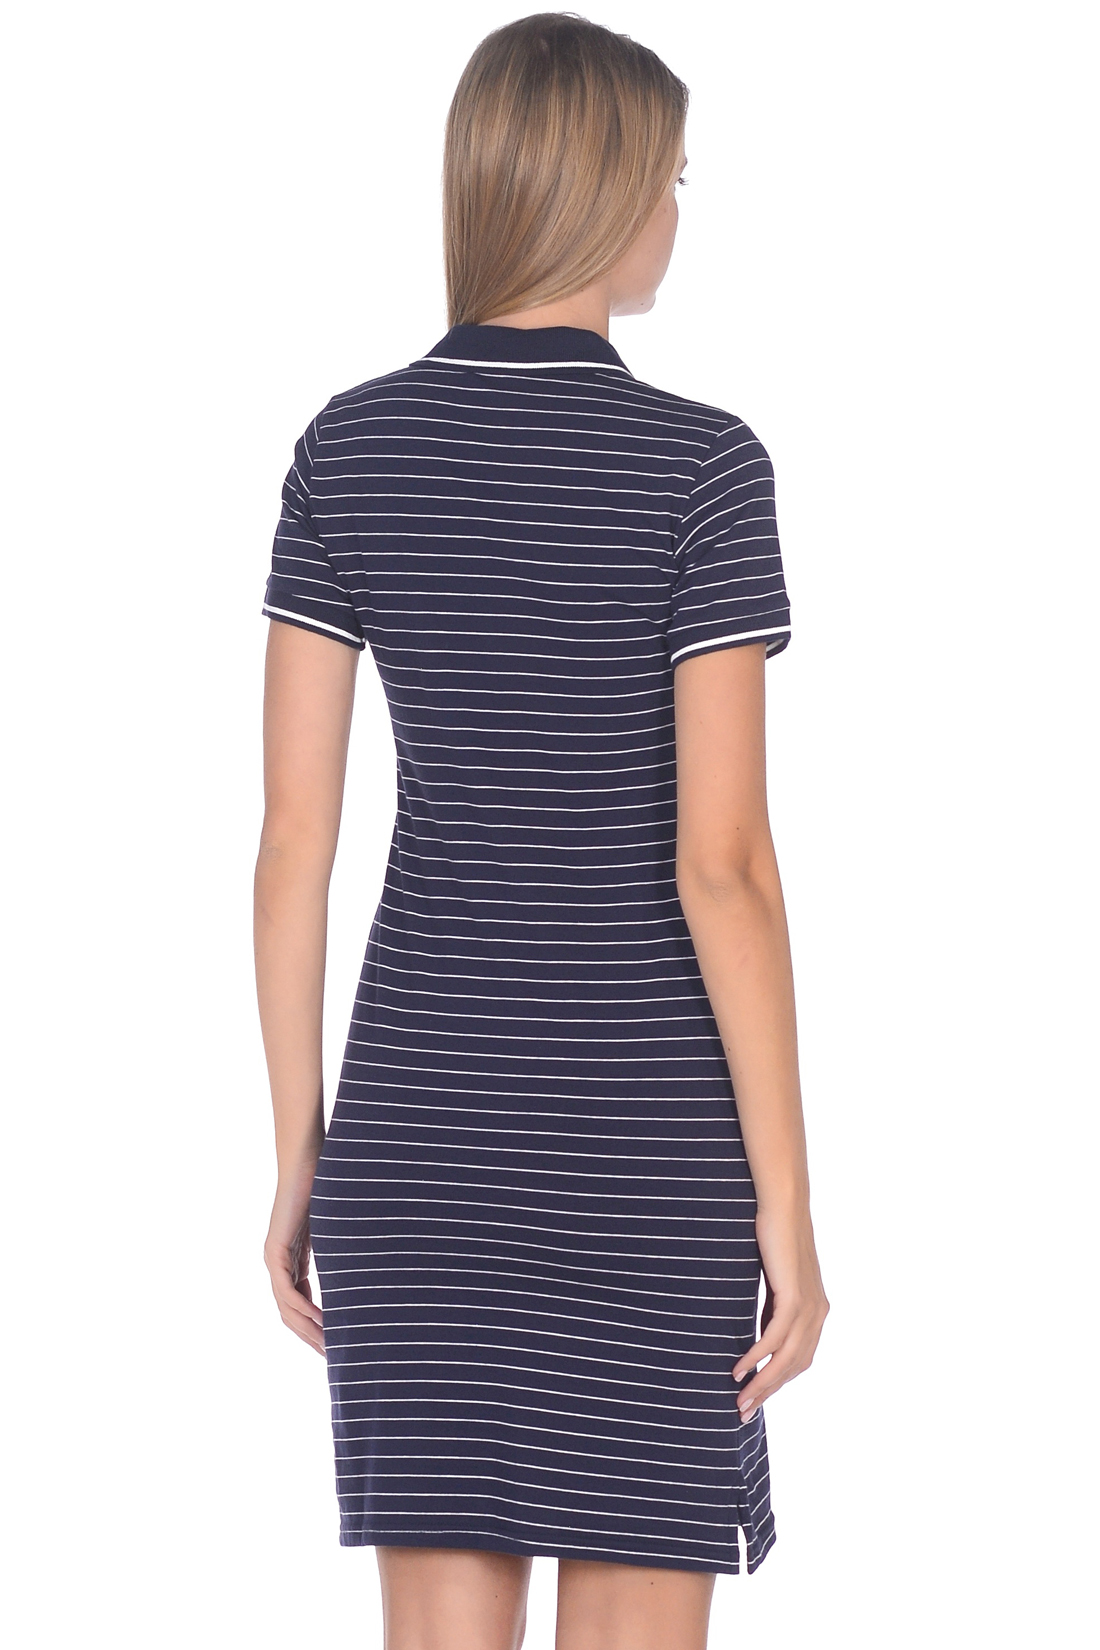 Платье-поло в полоску (арт. baon B459202), размер M, цвет dark navy striped#синий Платье-поло в полоску (арт. baon B459202) - фото 2